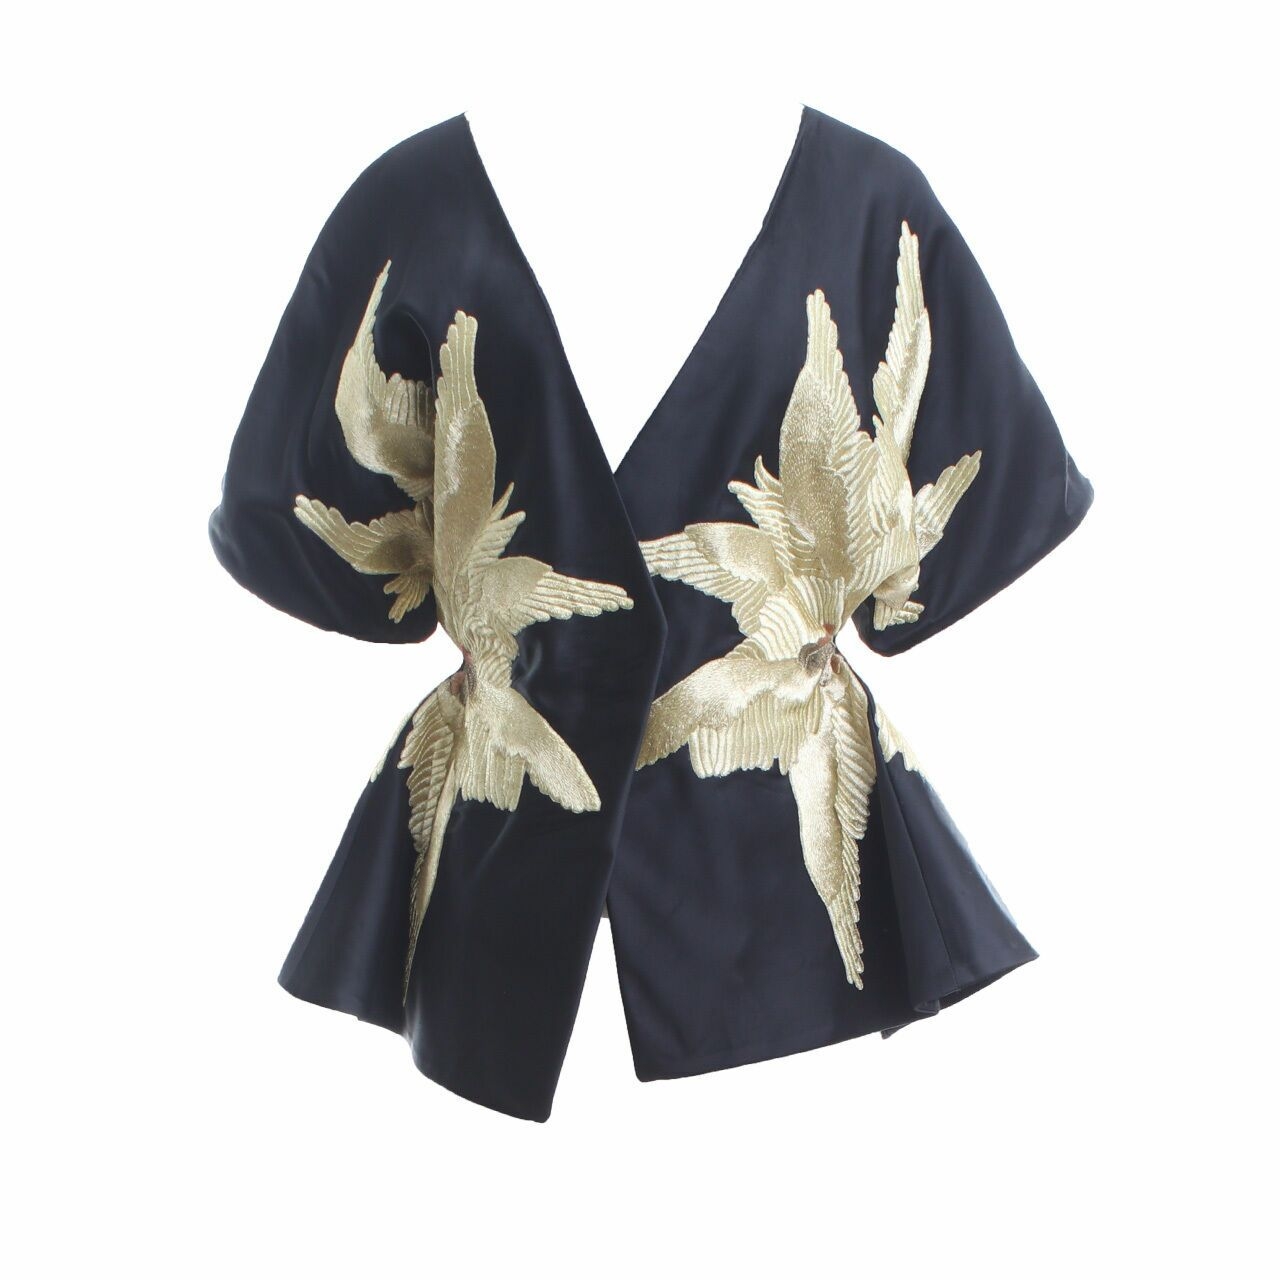 Sean & Sheila Black Gold Embroideryed Outerwear Kimono